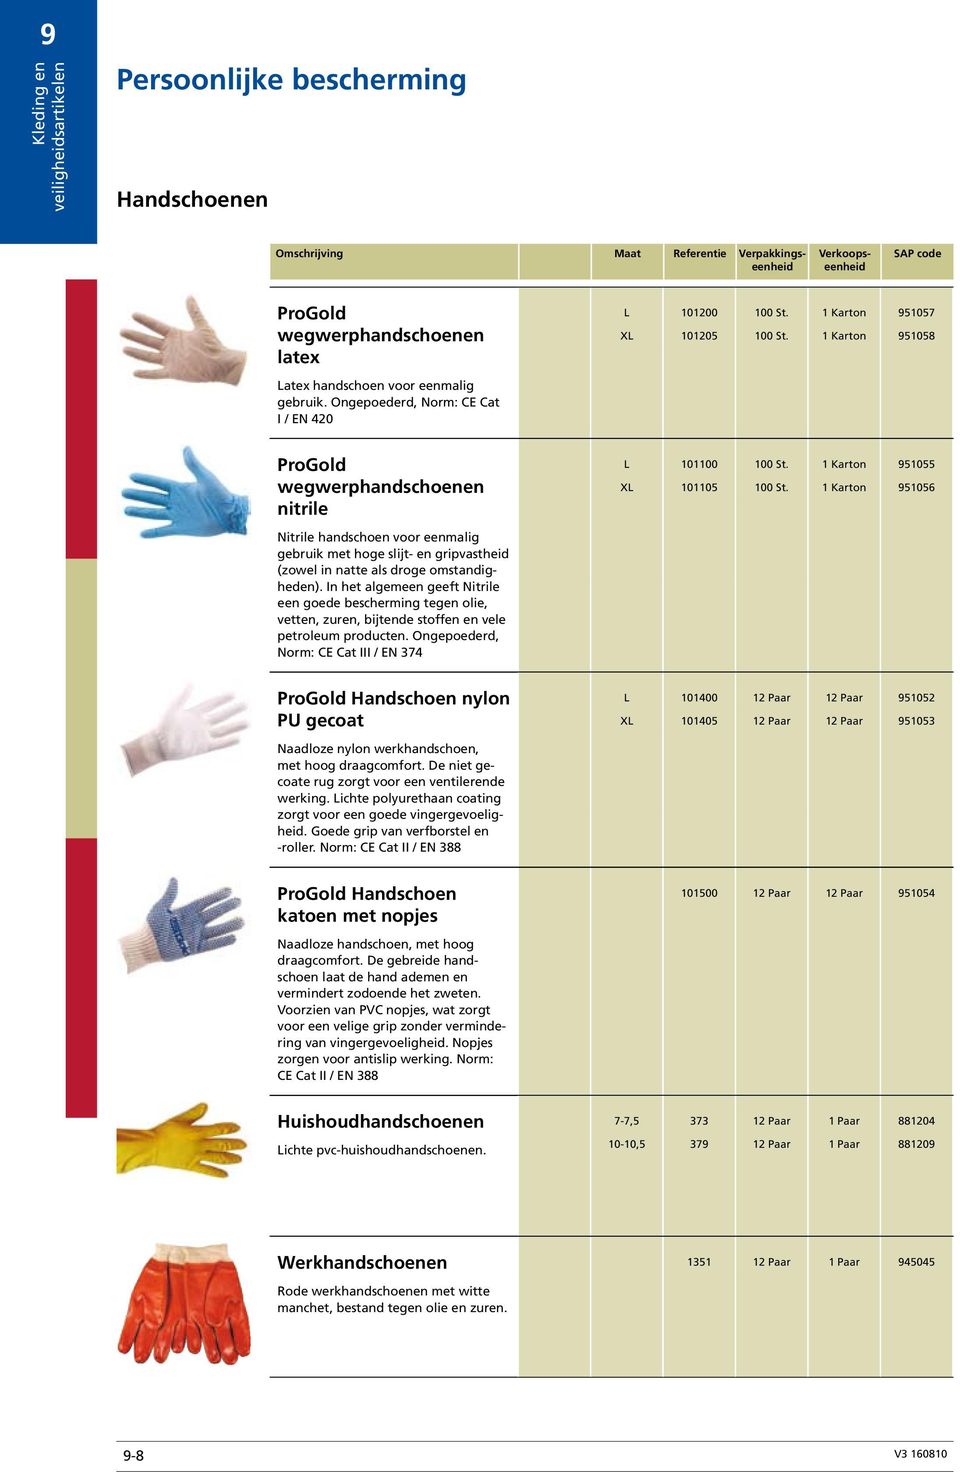 1 Karton 951056 Nitrile handschoen voor eenmalig gebruik met hoge slijt- en gripvastheid (zowel in natte als droge omstandigheden).